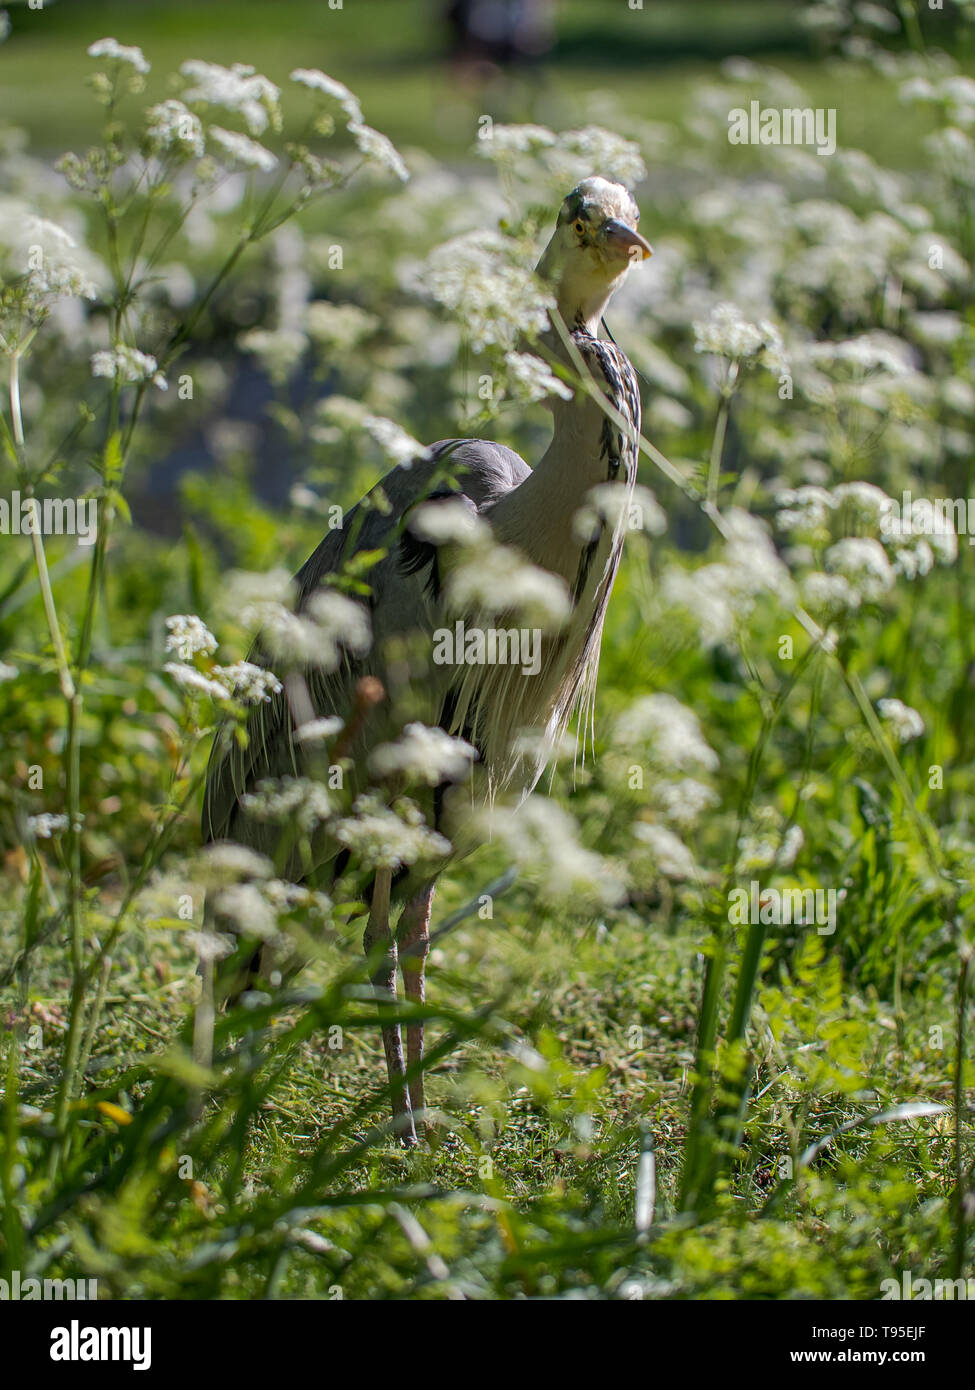 Un Airone cinerino (Ardea cinerea) attende dal lato di una via d'acqua su un giorno d'estate in London Regents Park, Regno Unito. Foto Stock